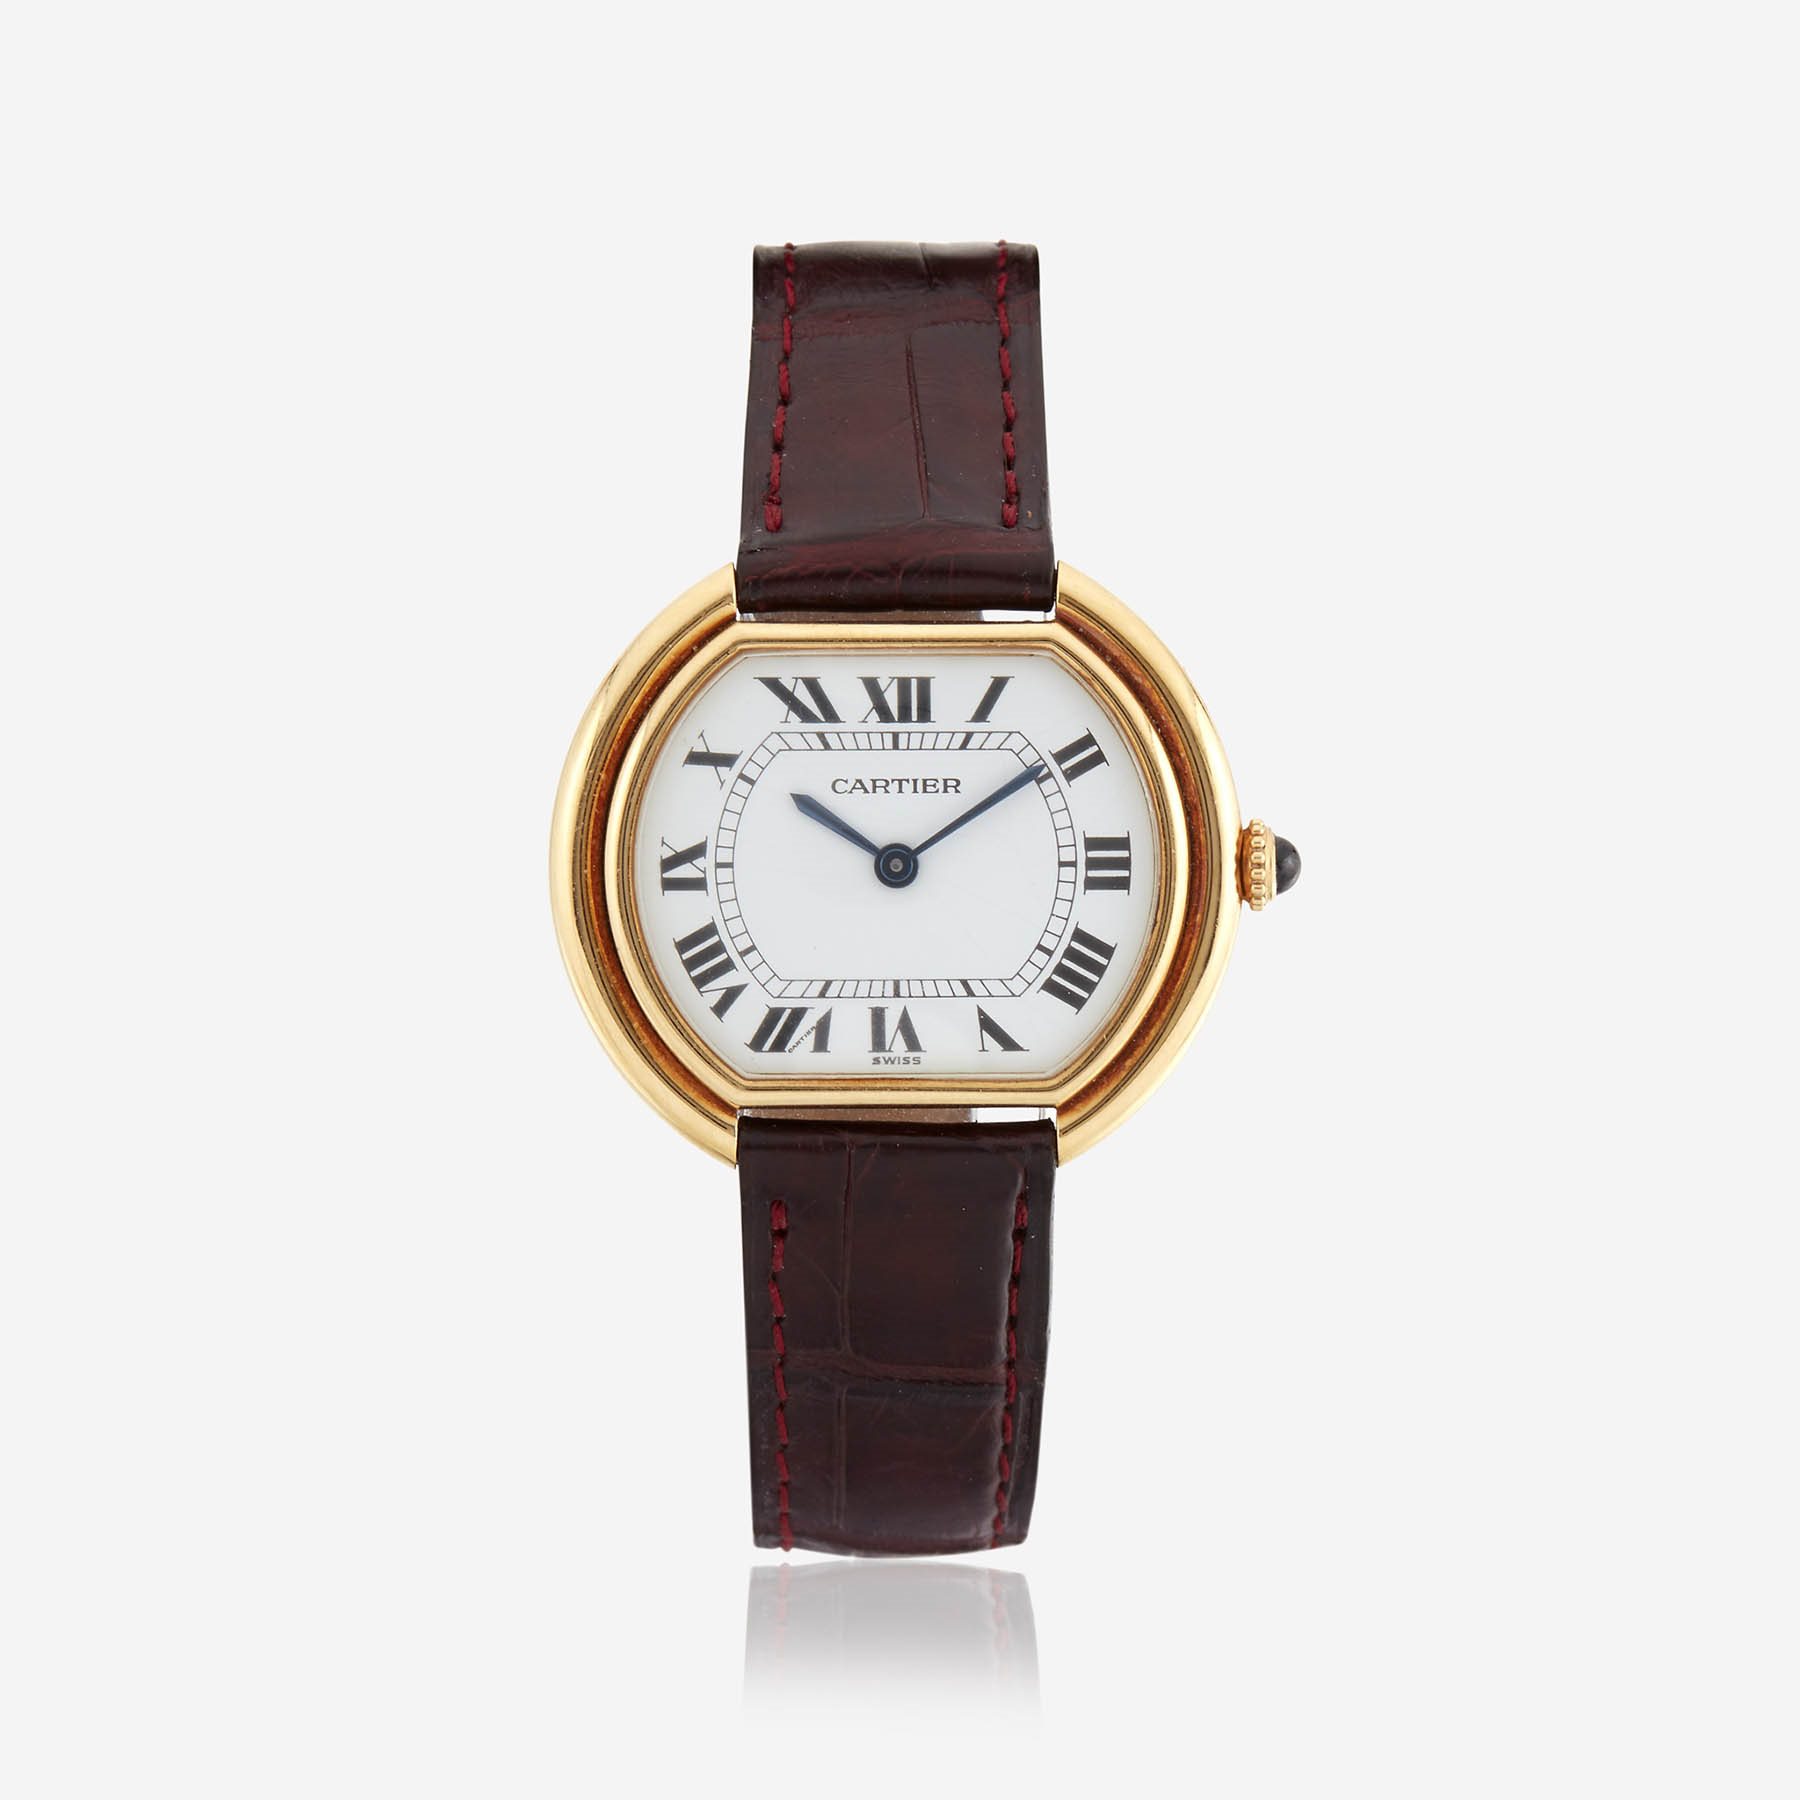 An eighteen karat gold watch, Cartier